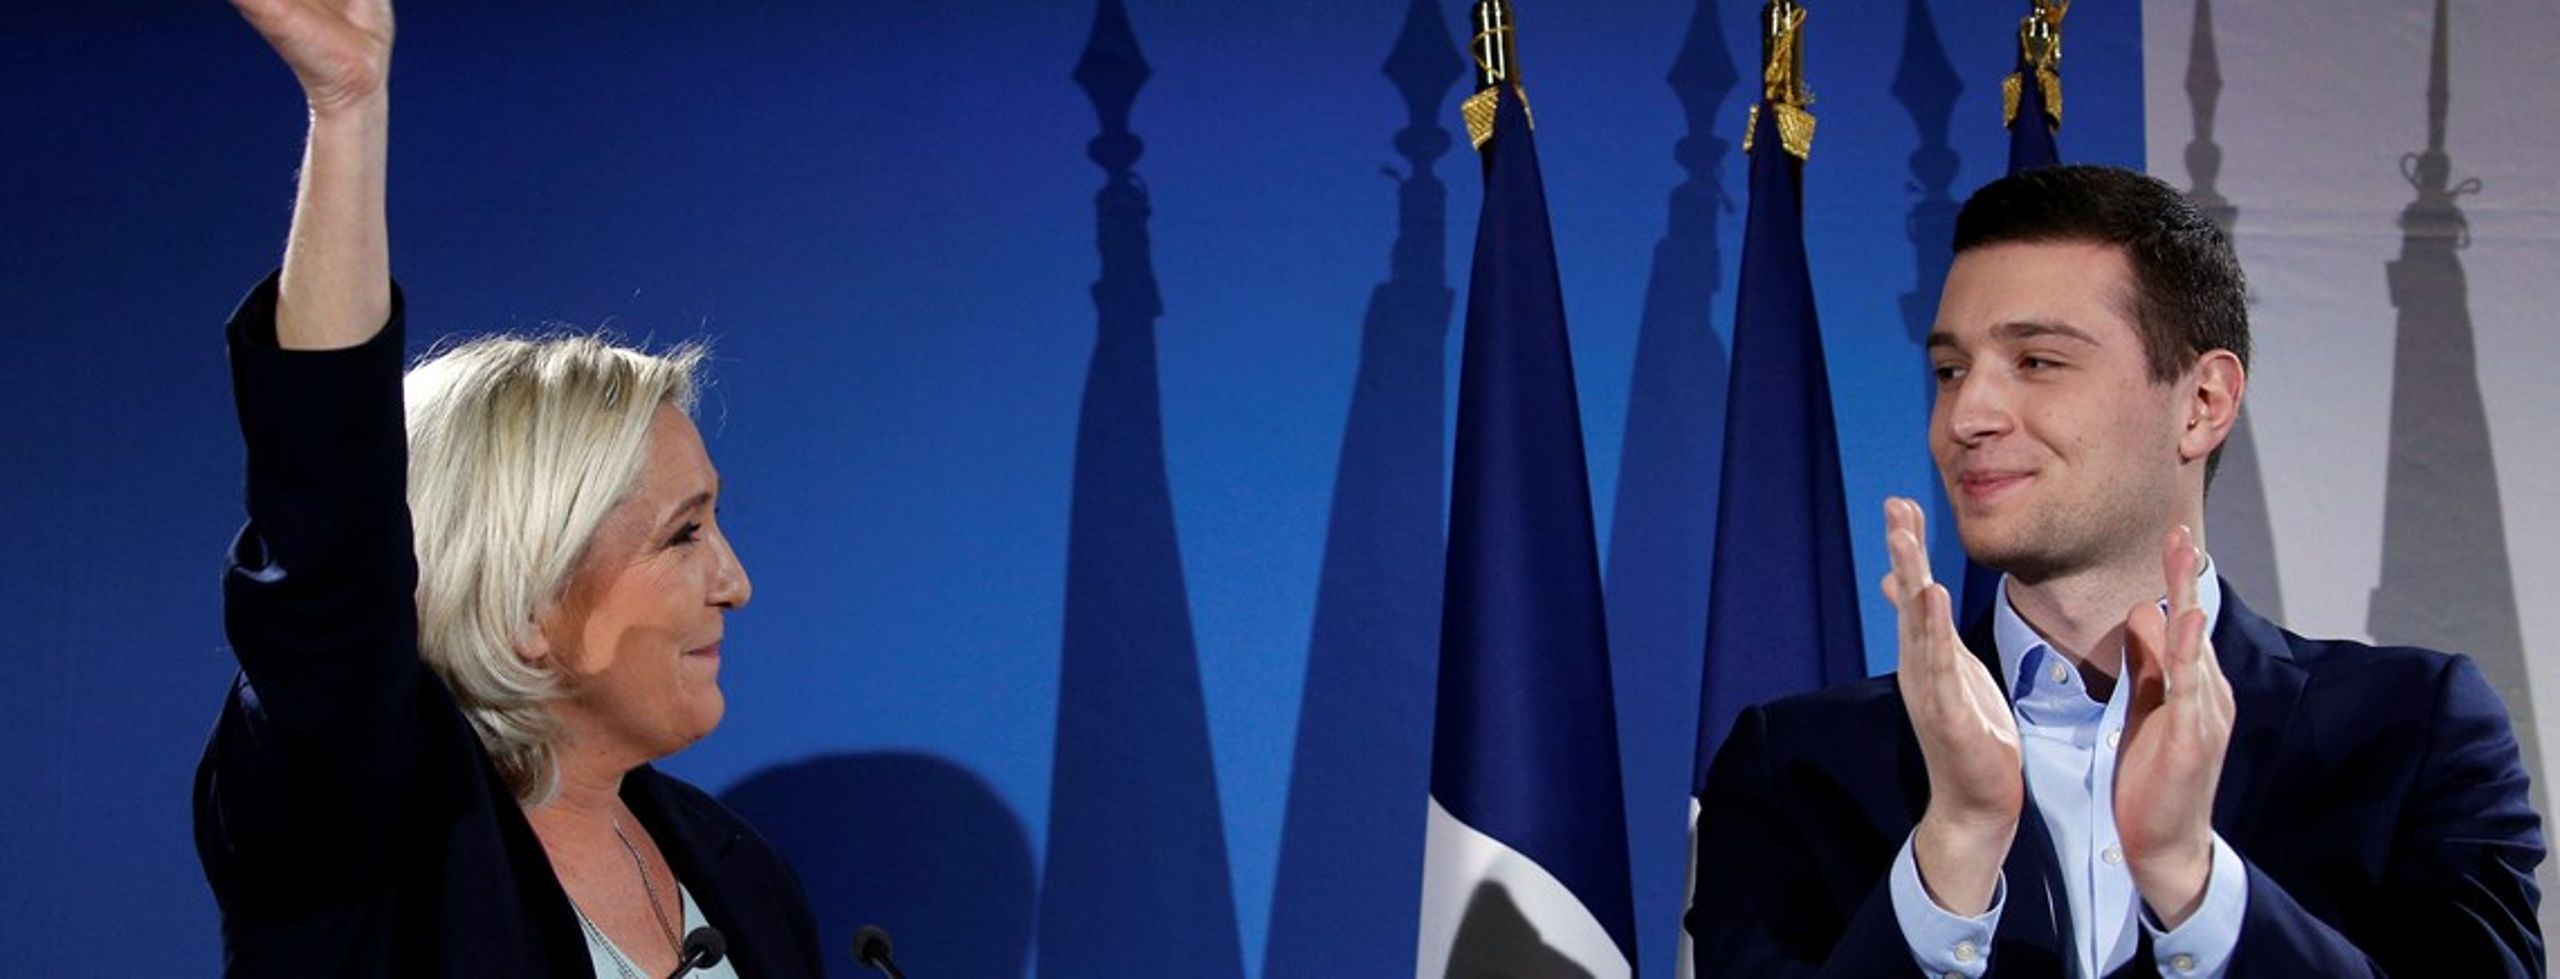 Leder af det franske højrefløjsparti Rassemblement National (tidligere Front National), Marine Le Pen, på scenen ved siden af partiets Europa-Parlamentskandidat, Jordan Bardella.